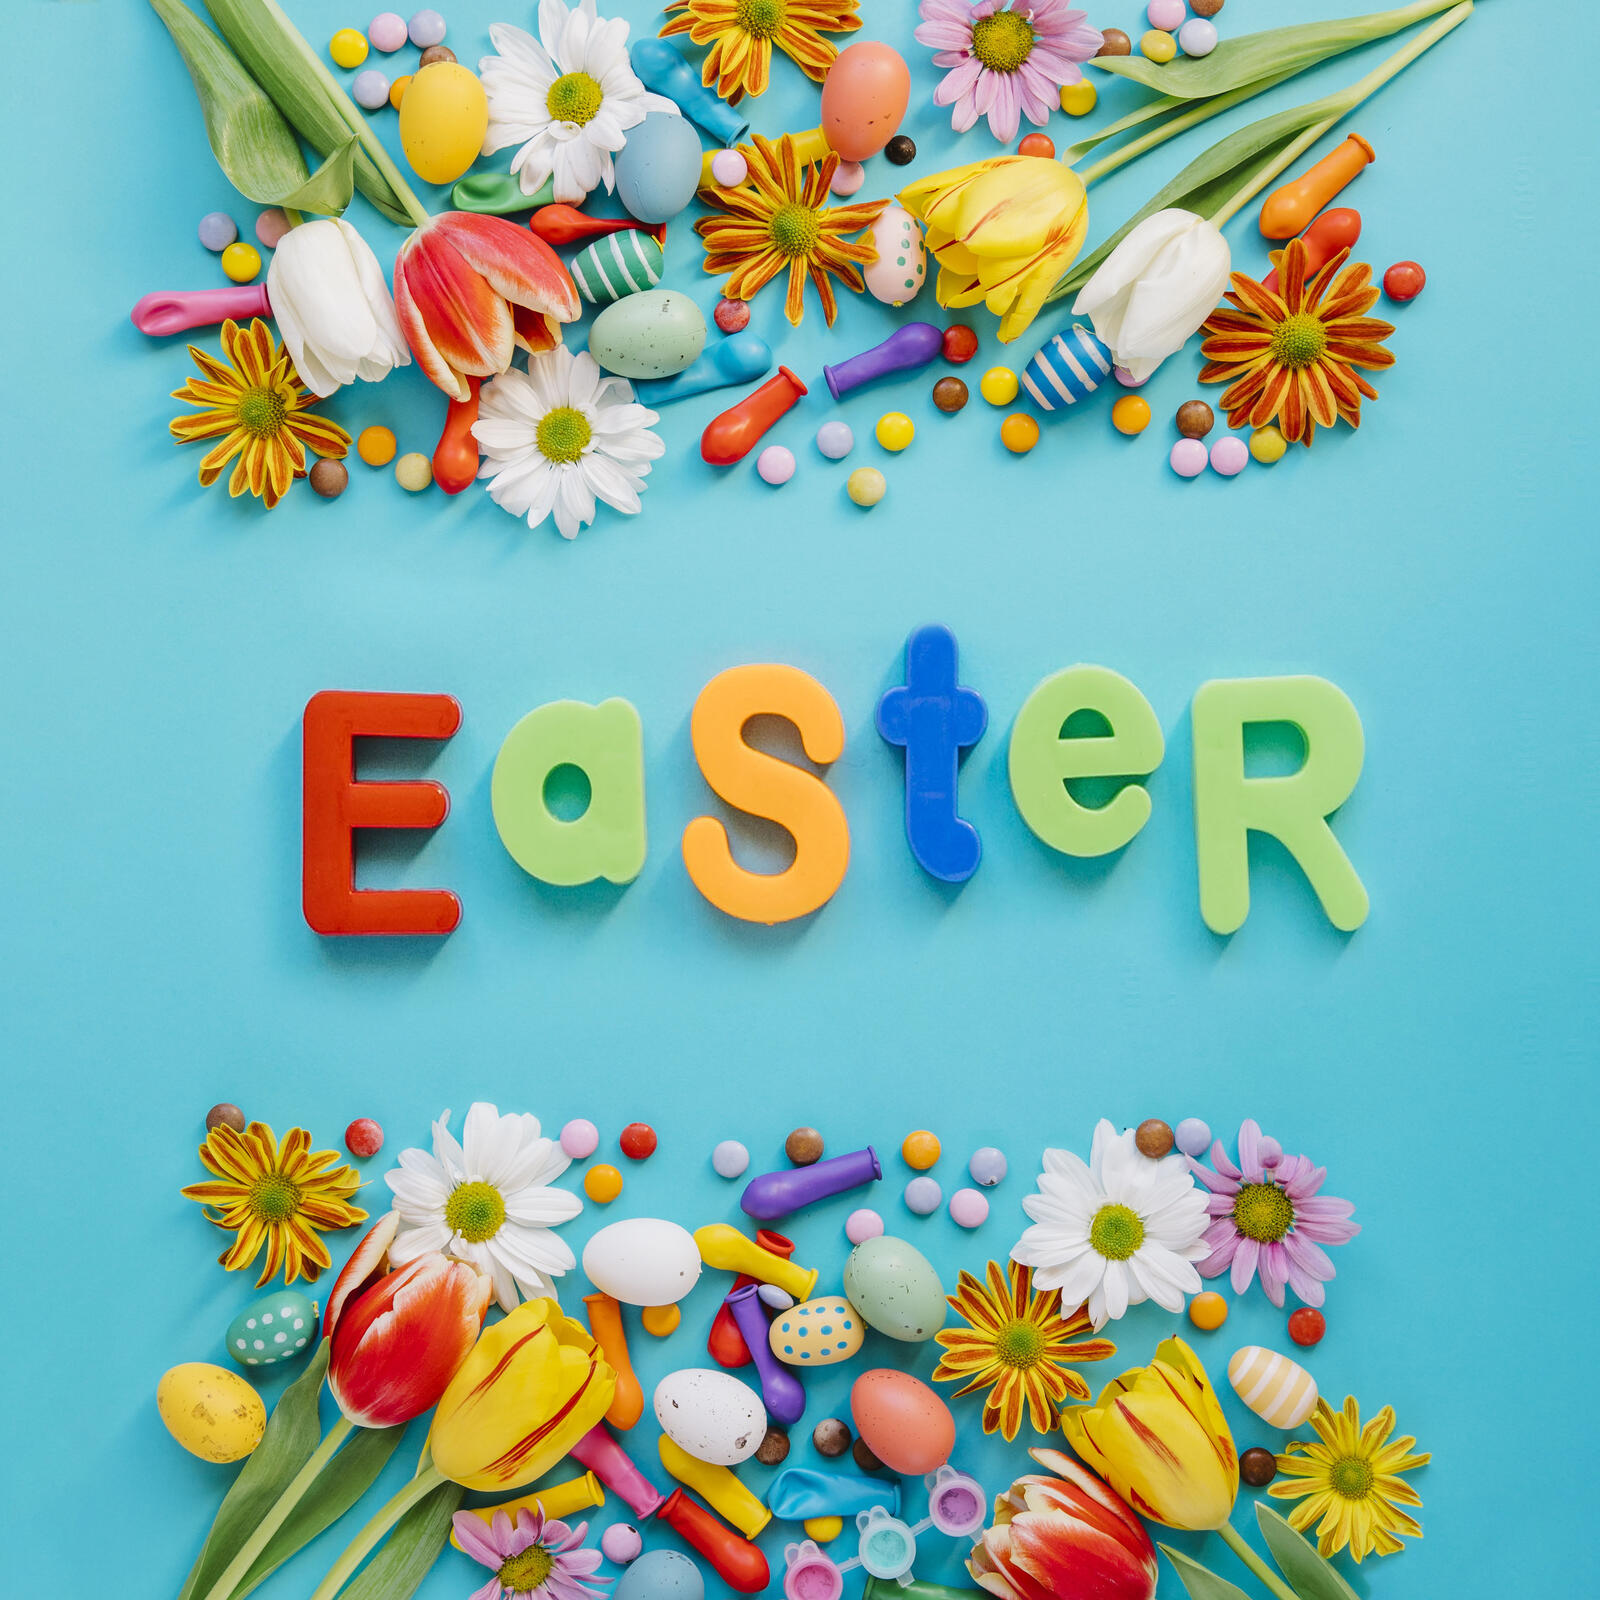 Wallpapers Easter eggs Easter wallpaper verily risen on the desktop